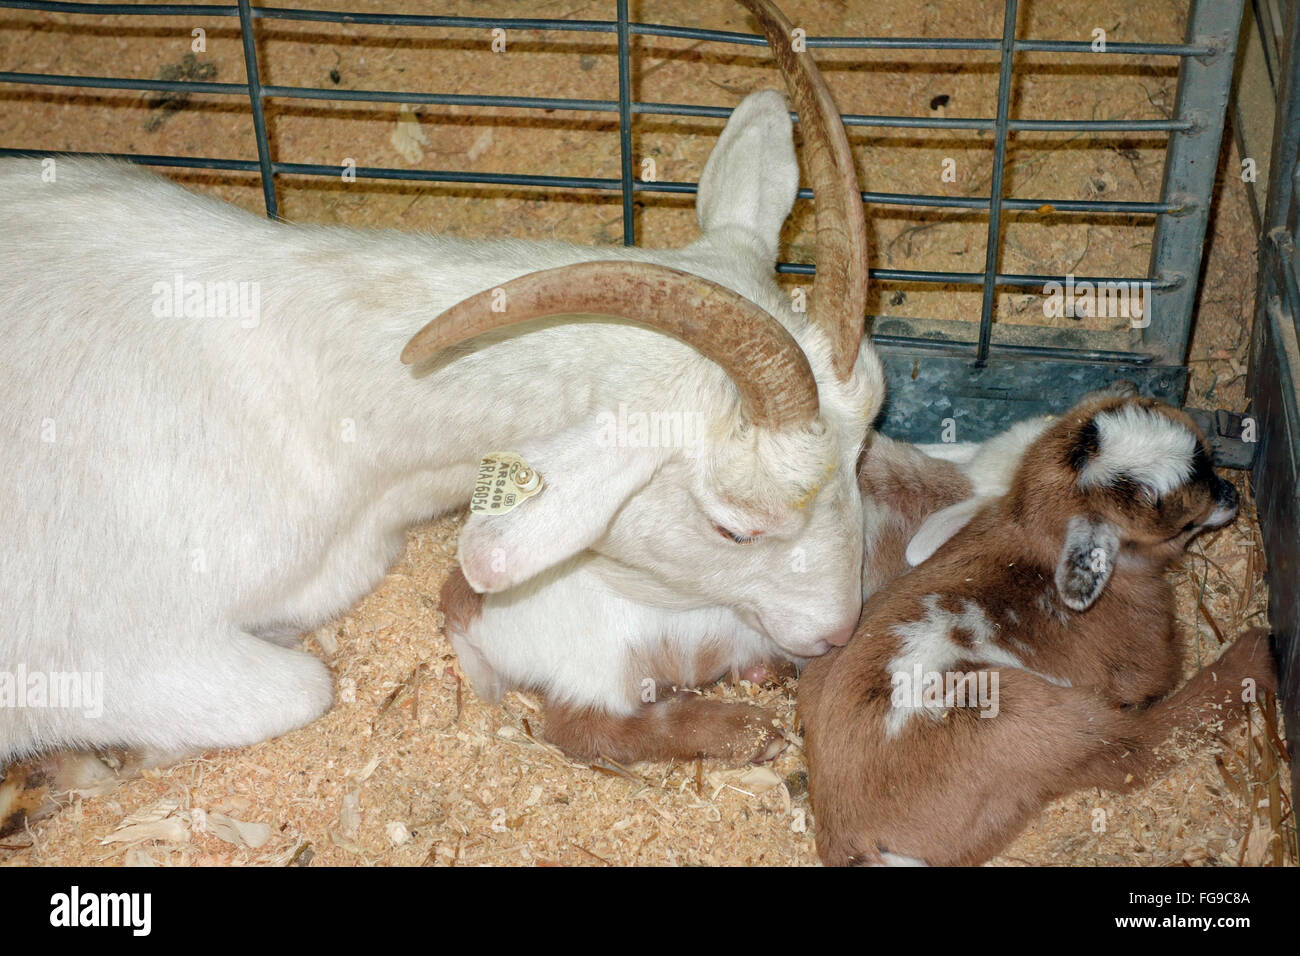 Una cabra doméstica tiende a dos bebés en una pluma Foto de stock